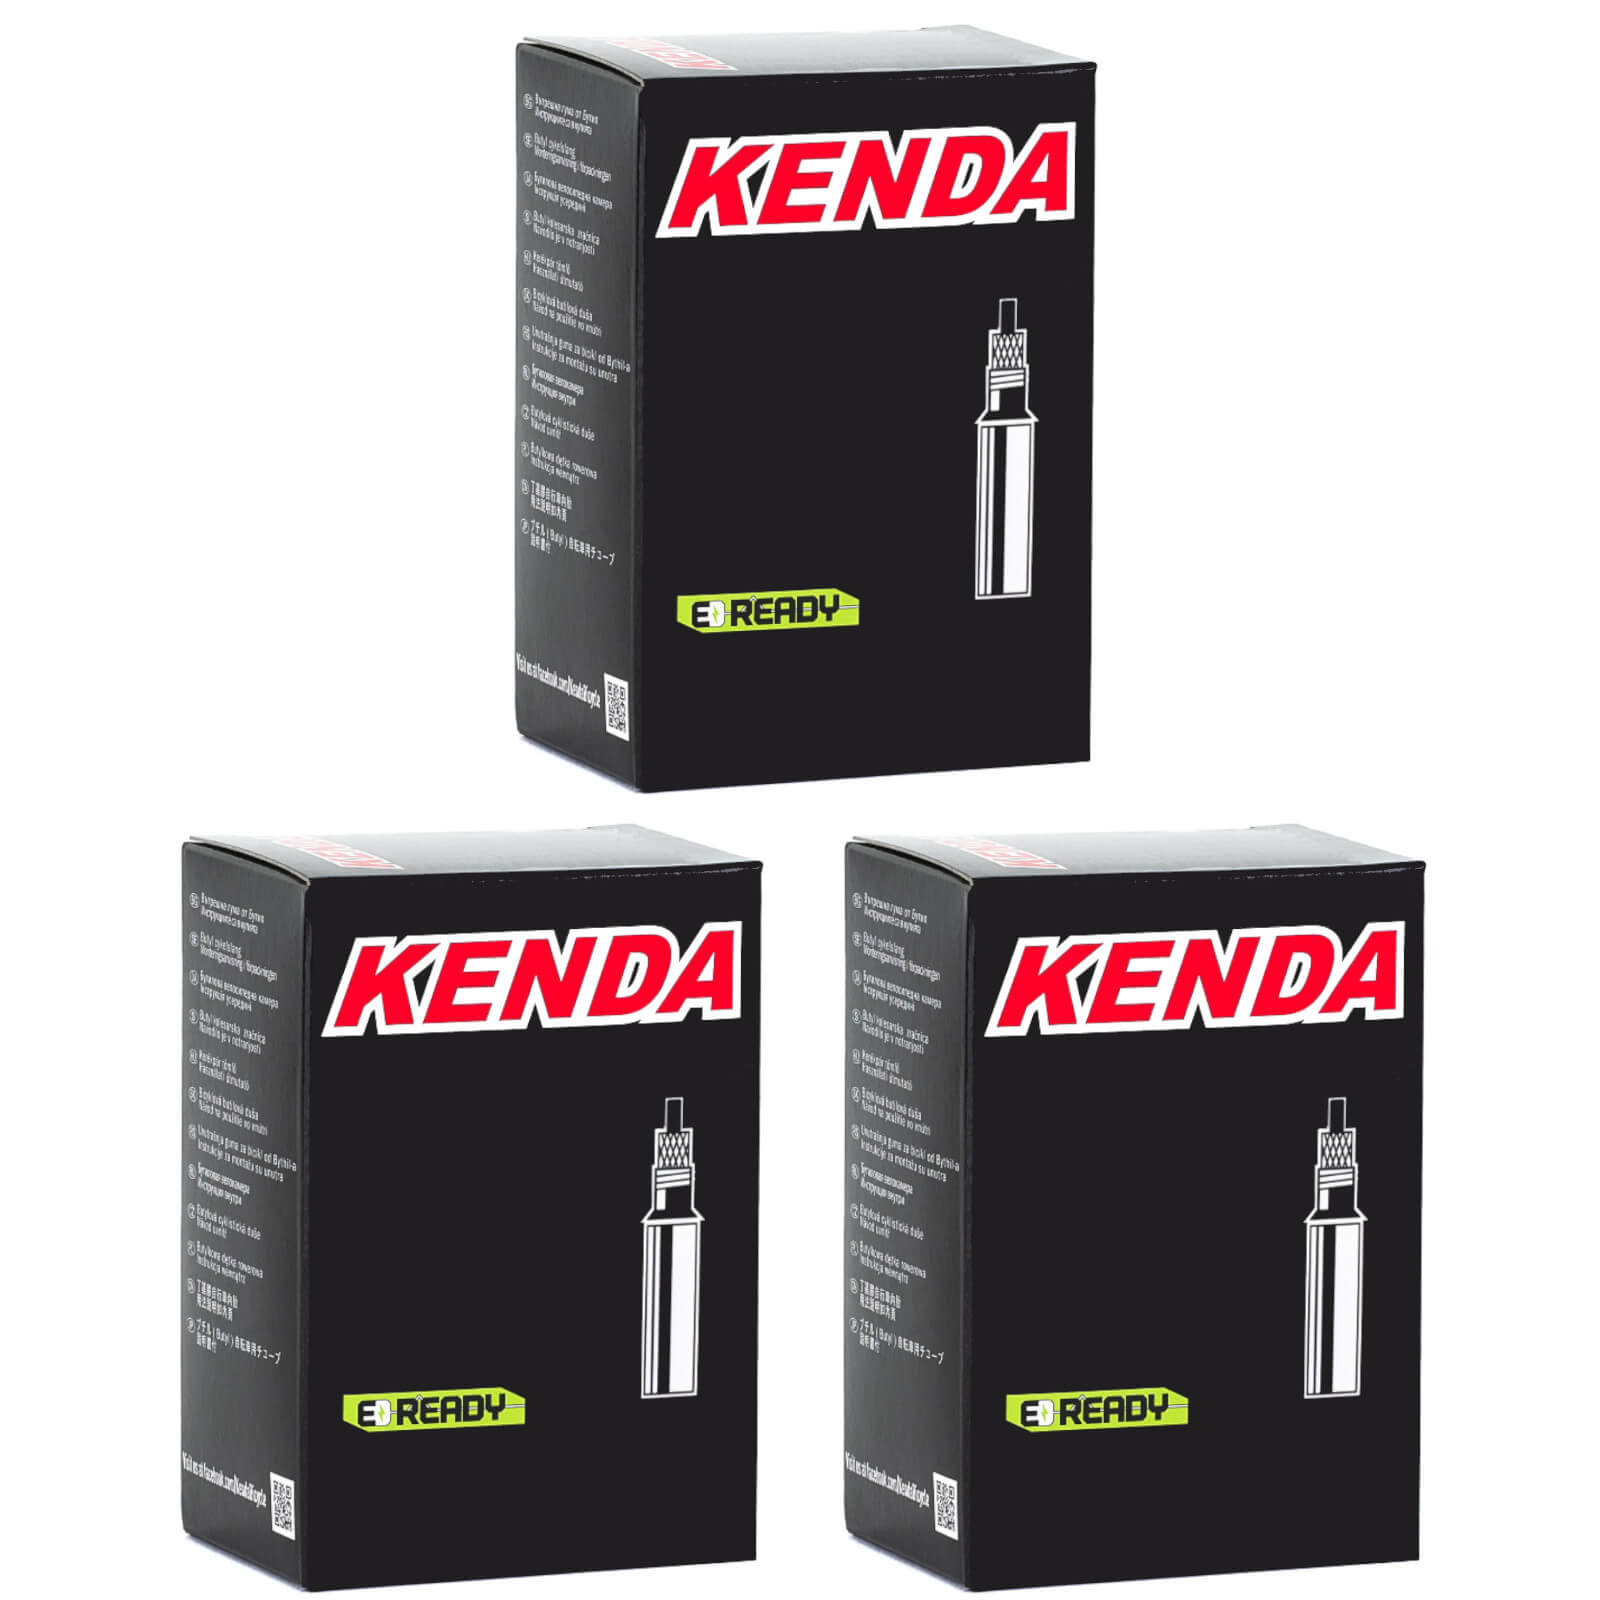 Kenda 700x28-35c 700c Presta Valve Bike Inner Tube Pack of 3